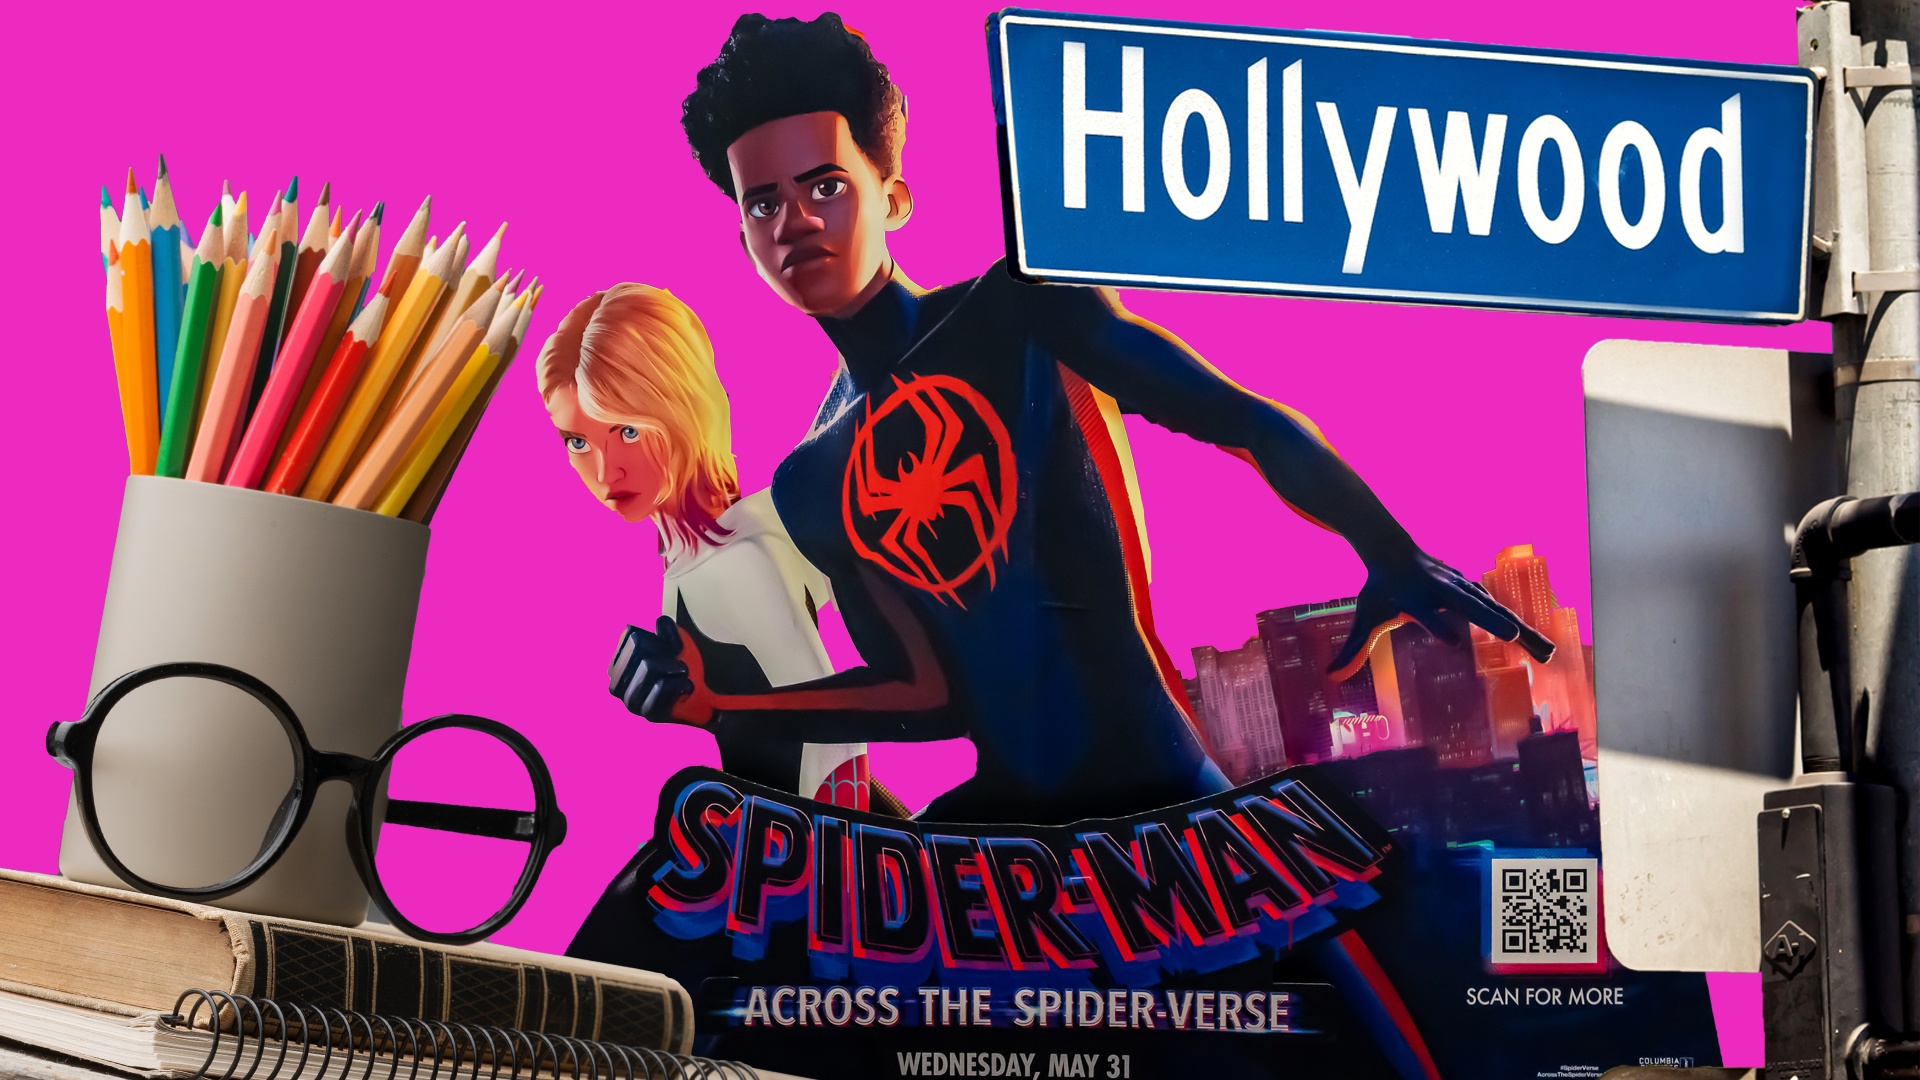 #Vom Kinderzimmer nach Hollywood: Schüler animiert Spider-Man-Szene mit Lego und wird für Film verpflichtet